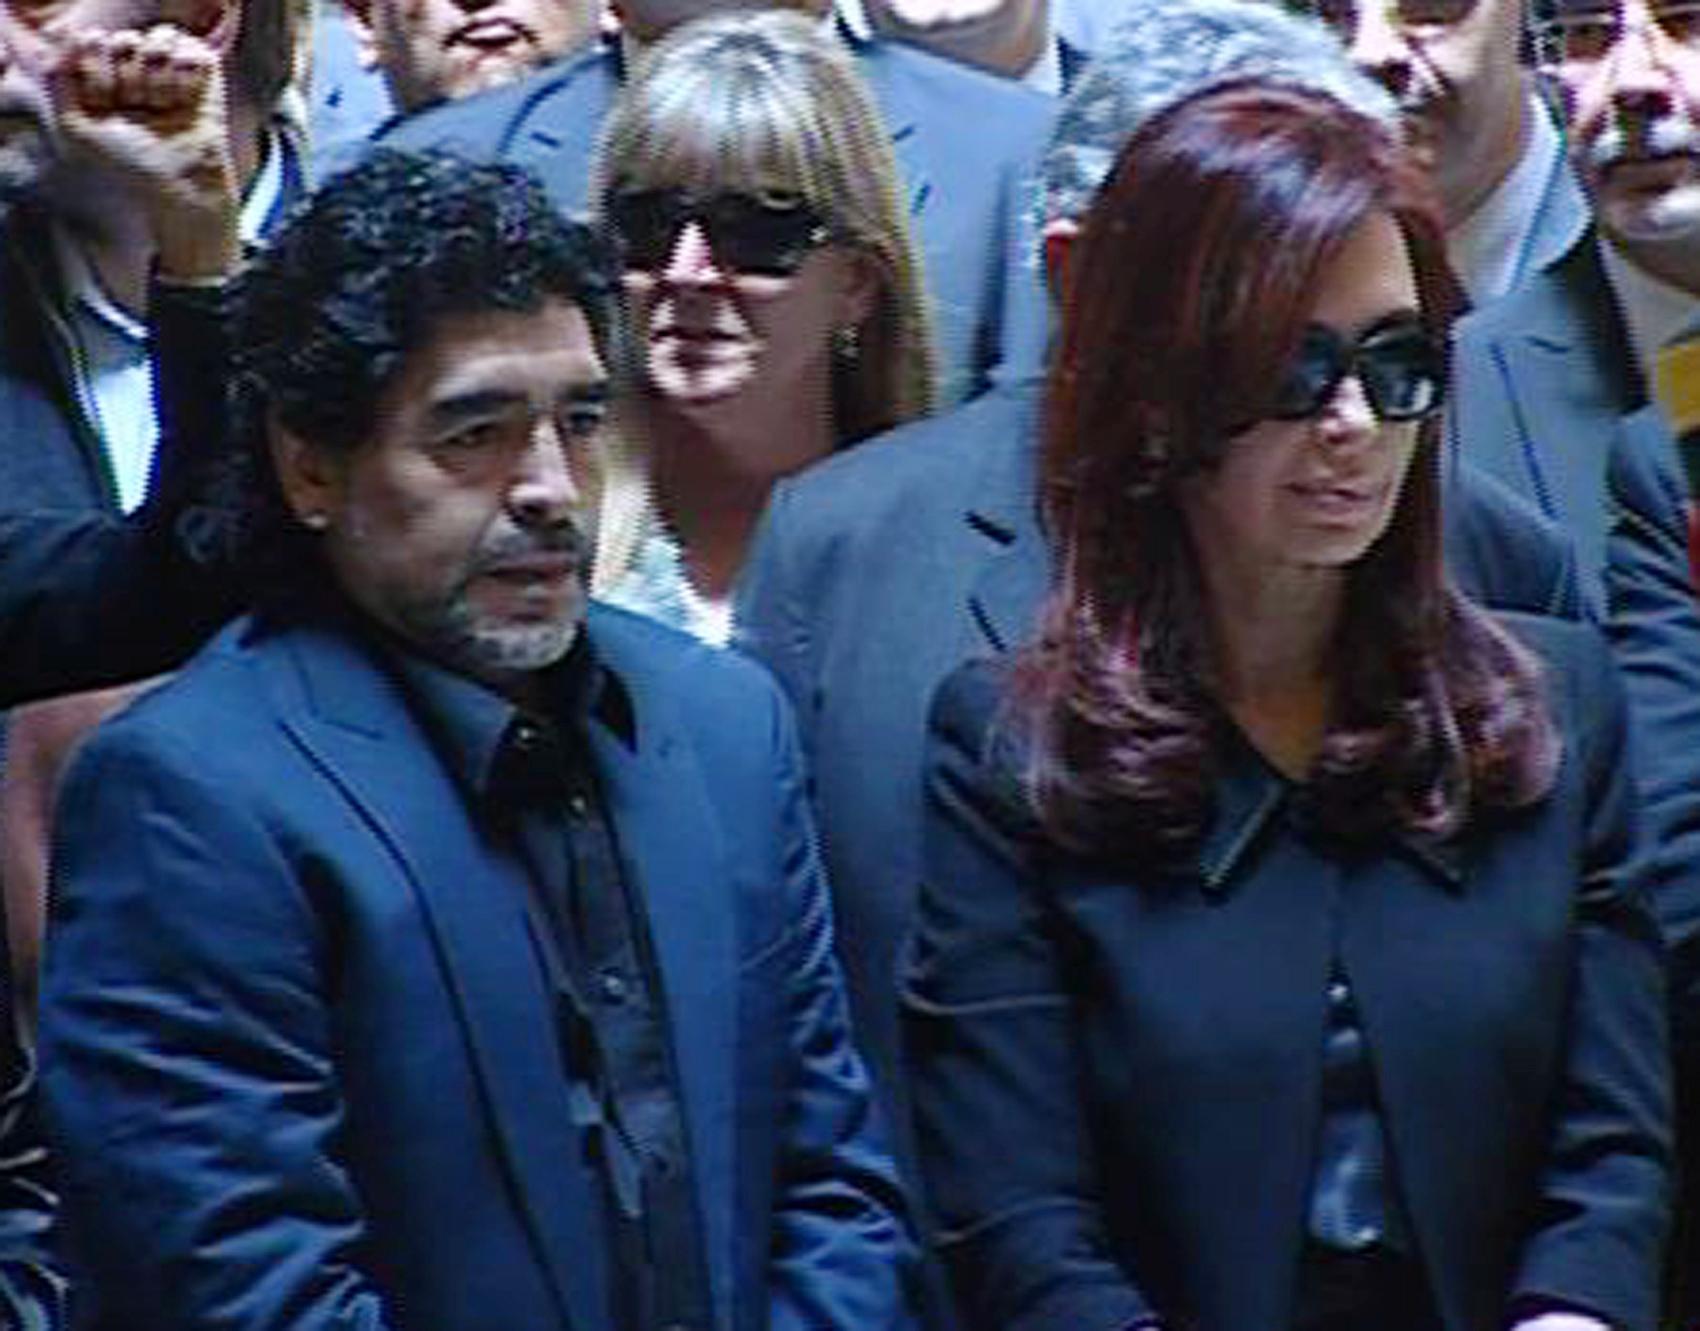 Diego Maradona och Argentinas dåvarande president och nuvarande vicepresident Cristina Fernández de Kirchner vid likvakan för hennes avlidne make, expresidenten Néstor Kirchner, i oktober 2010.